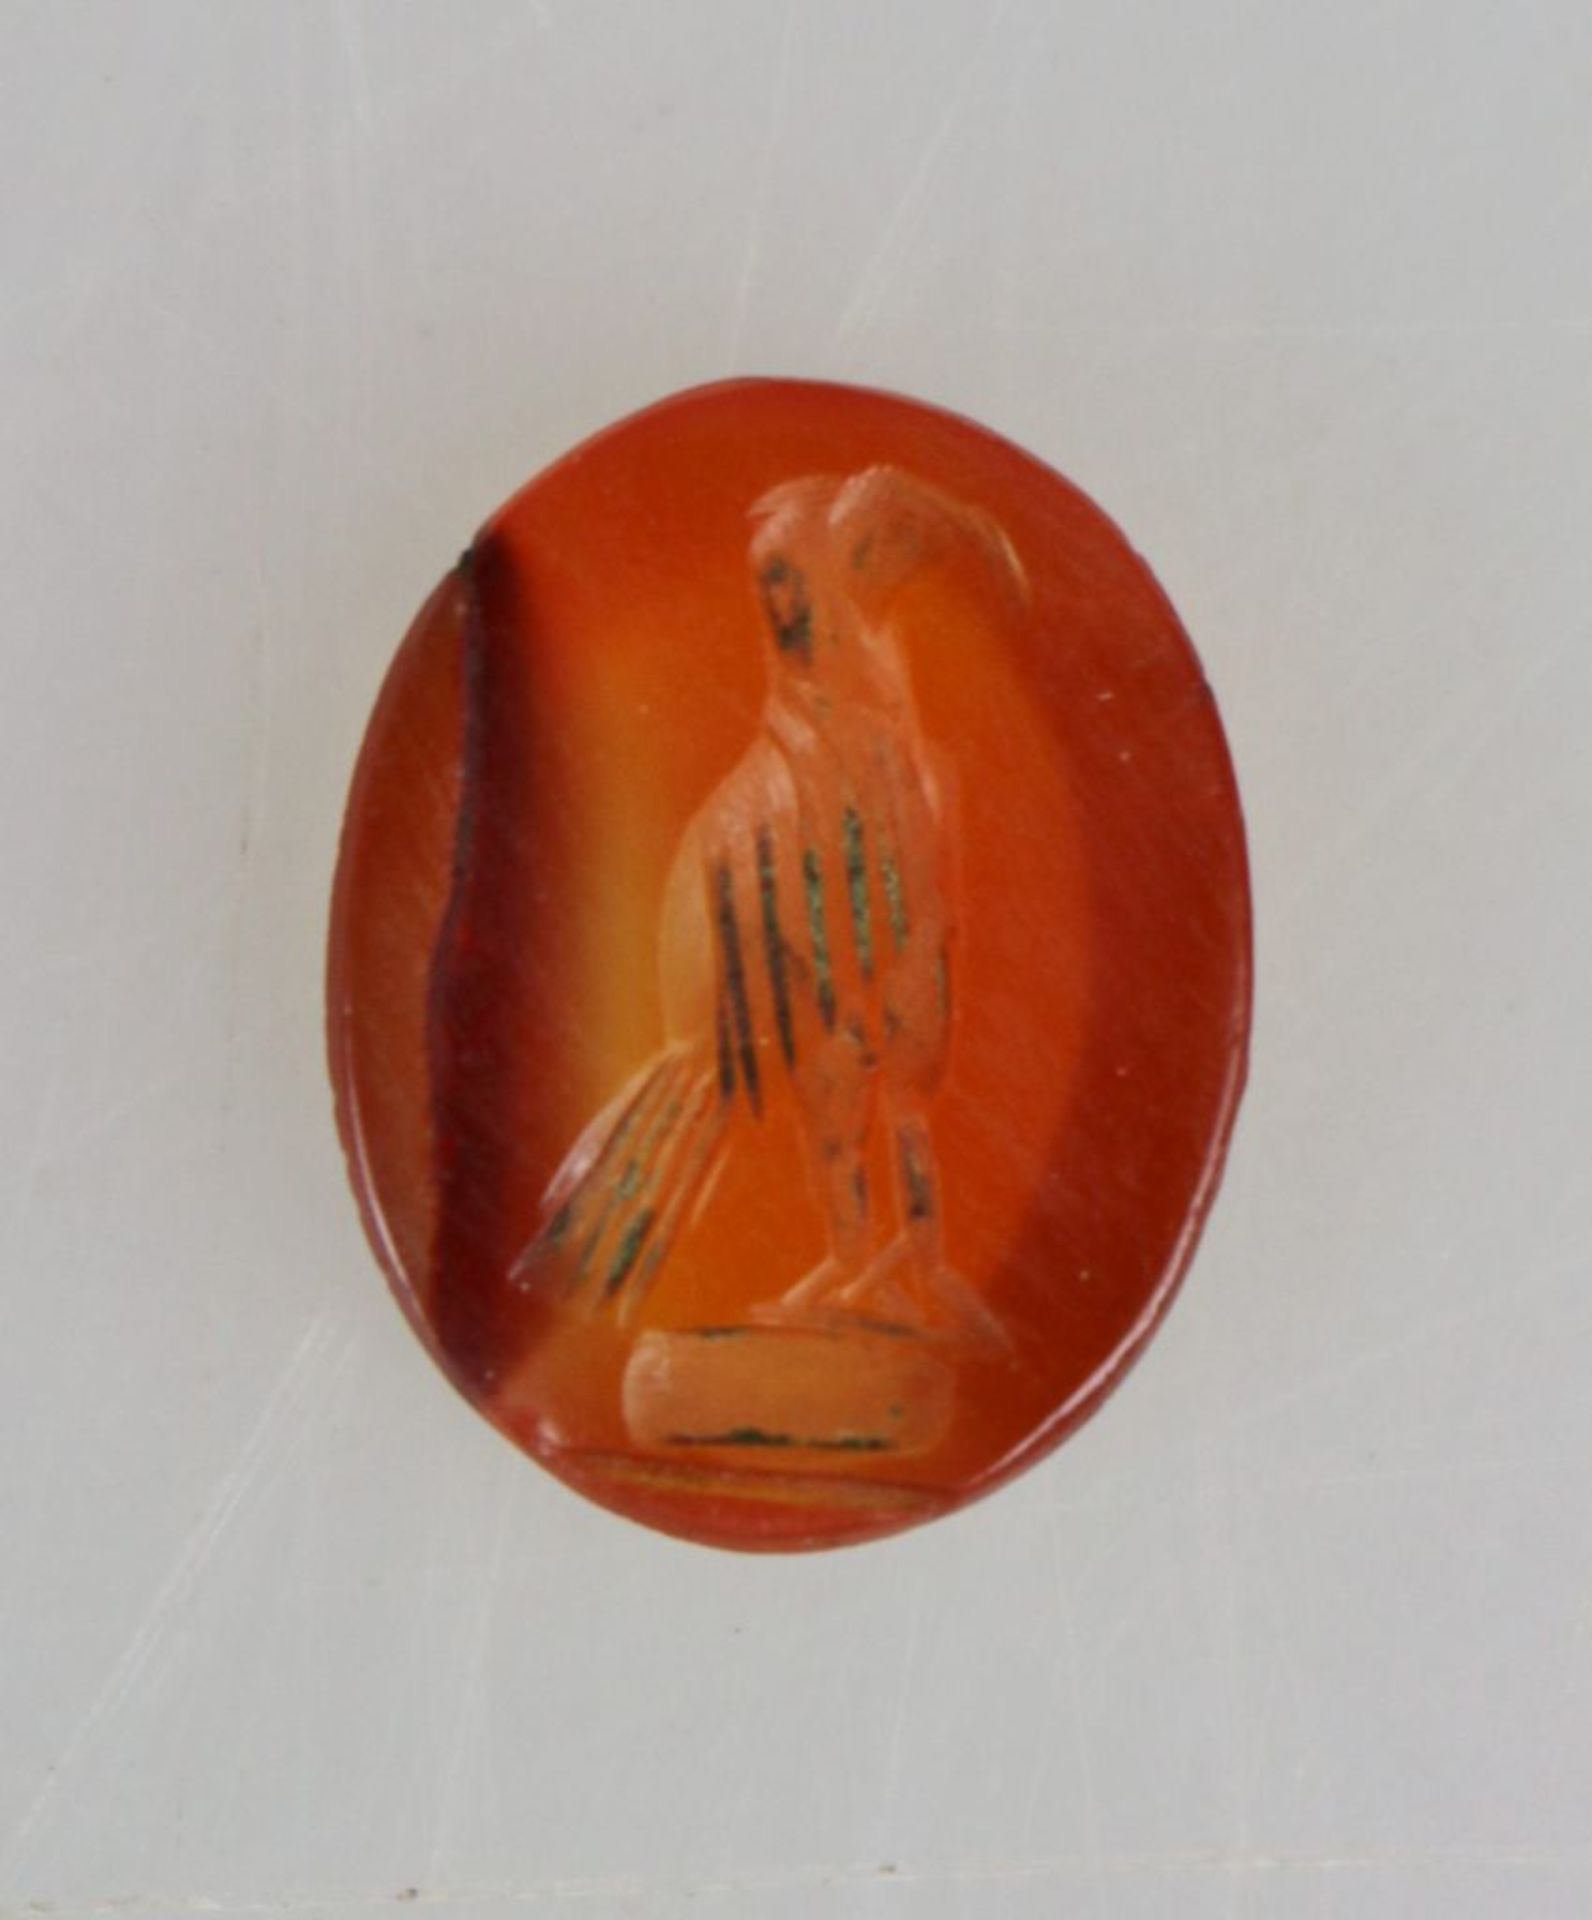 Intaglio, aufrechte Vogeldarstellung, evtl. Adler, auf orangem Karneol, wohl römisch, 1.- 2. Jh.